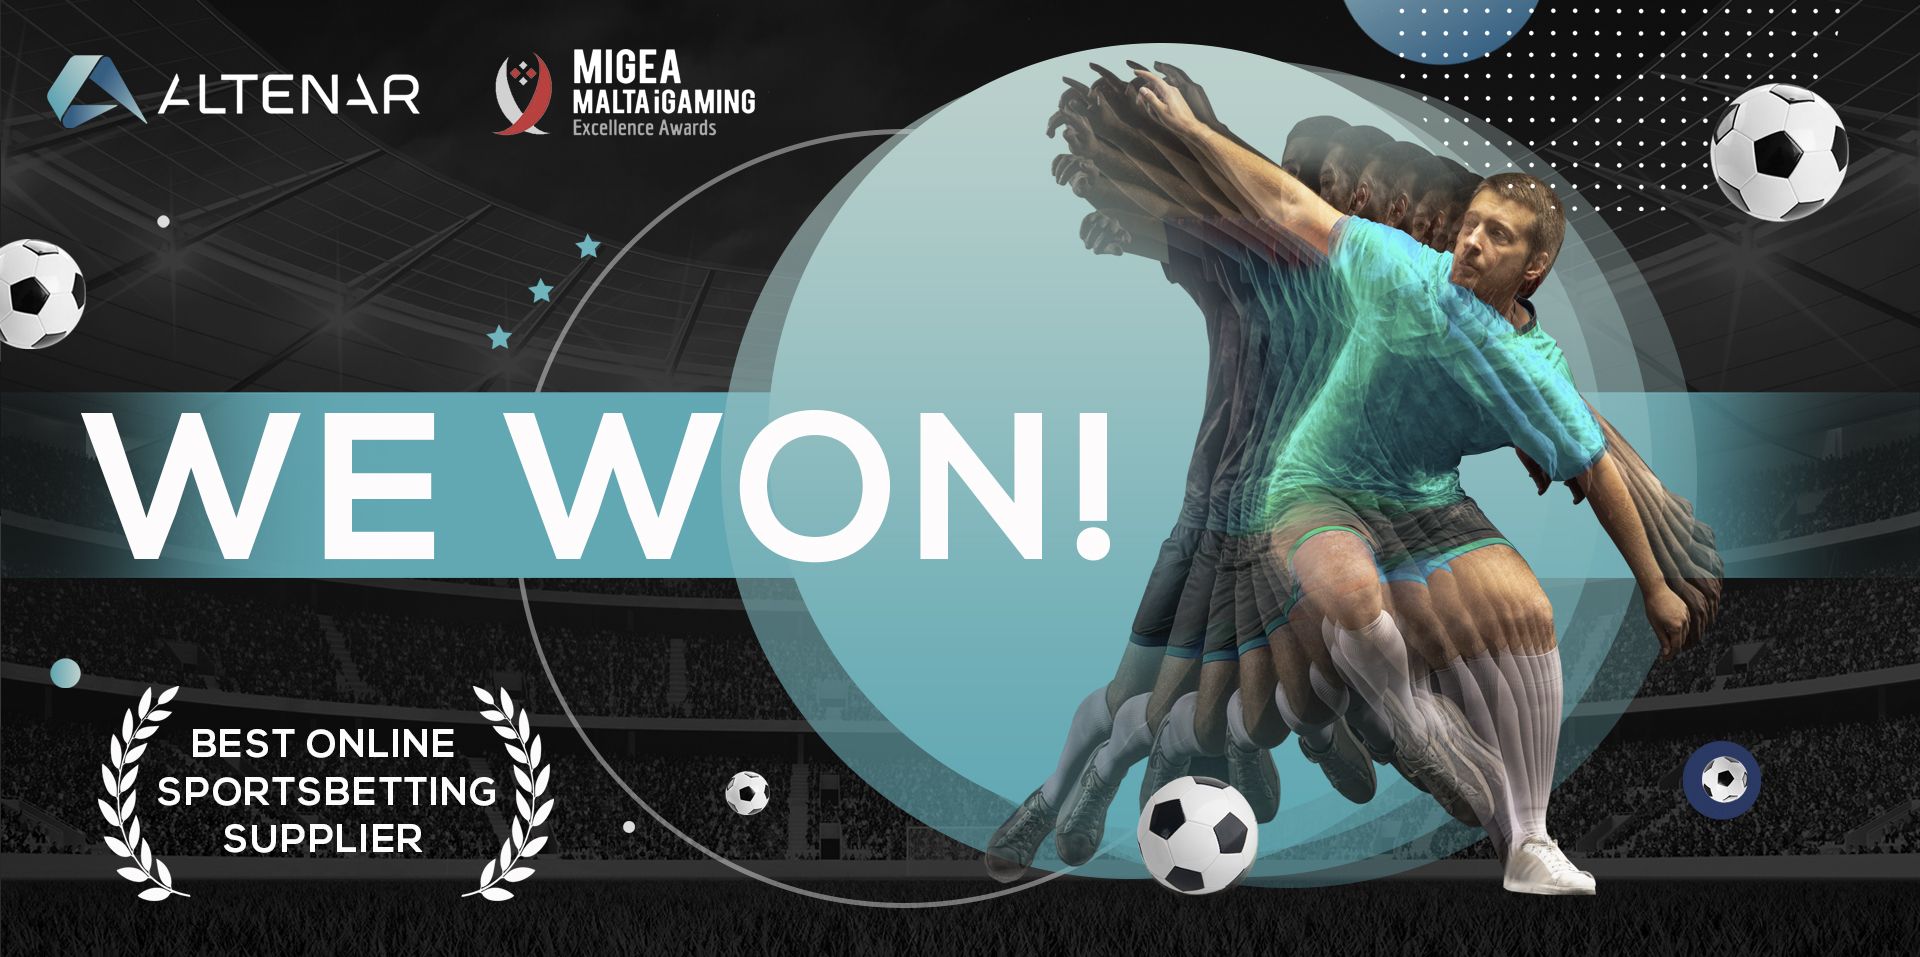 We won! Best Online Sports Betting supplier! 2